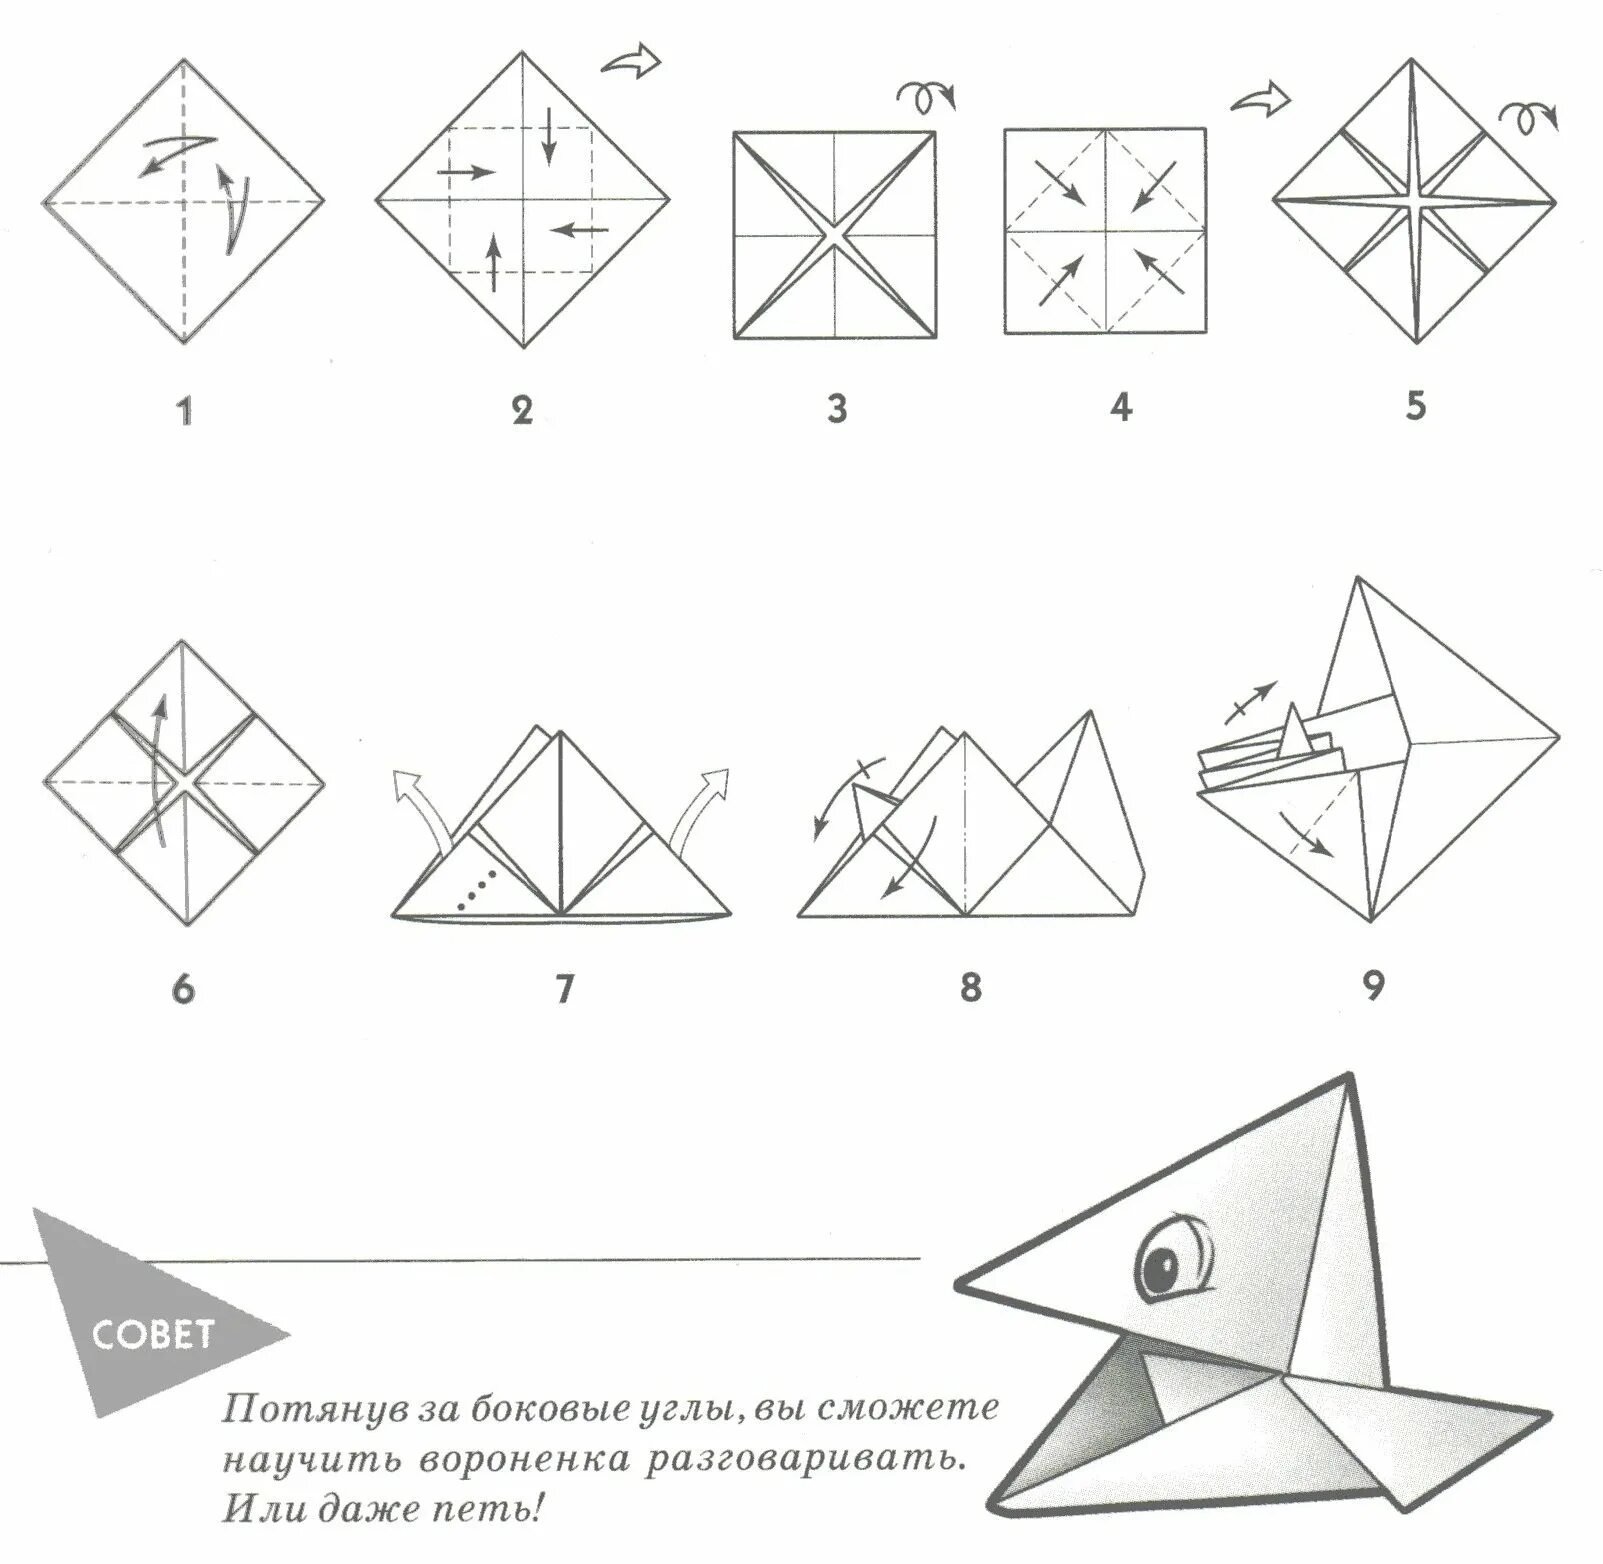 Как сделать маленький оригами. Поделка оригами из бумаги для начинающих пошагово. Оригами из бумаги для начинающих схемы пошагово. Поделки из бумаги схема складывания. Оригами из бумаги без клея схемы.